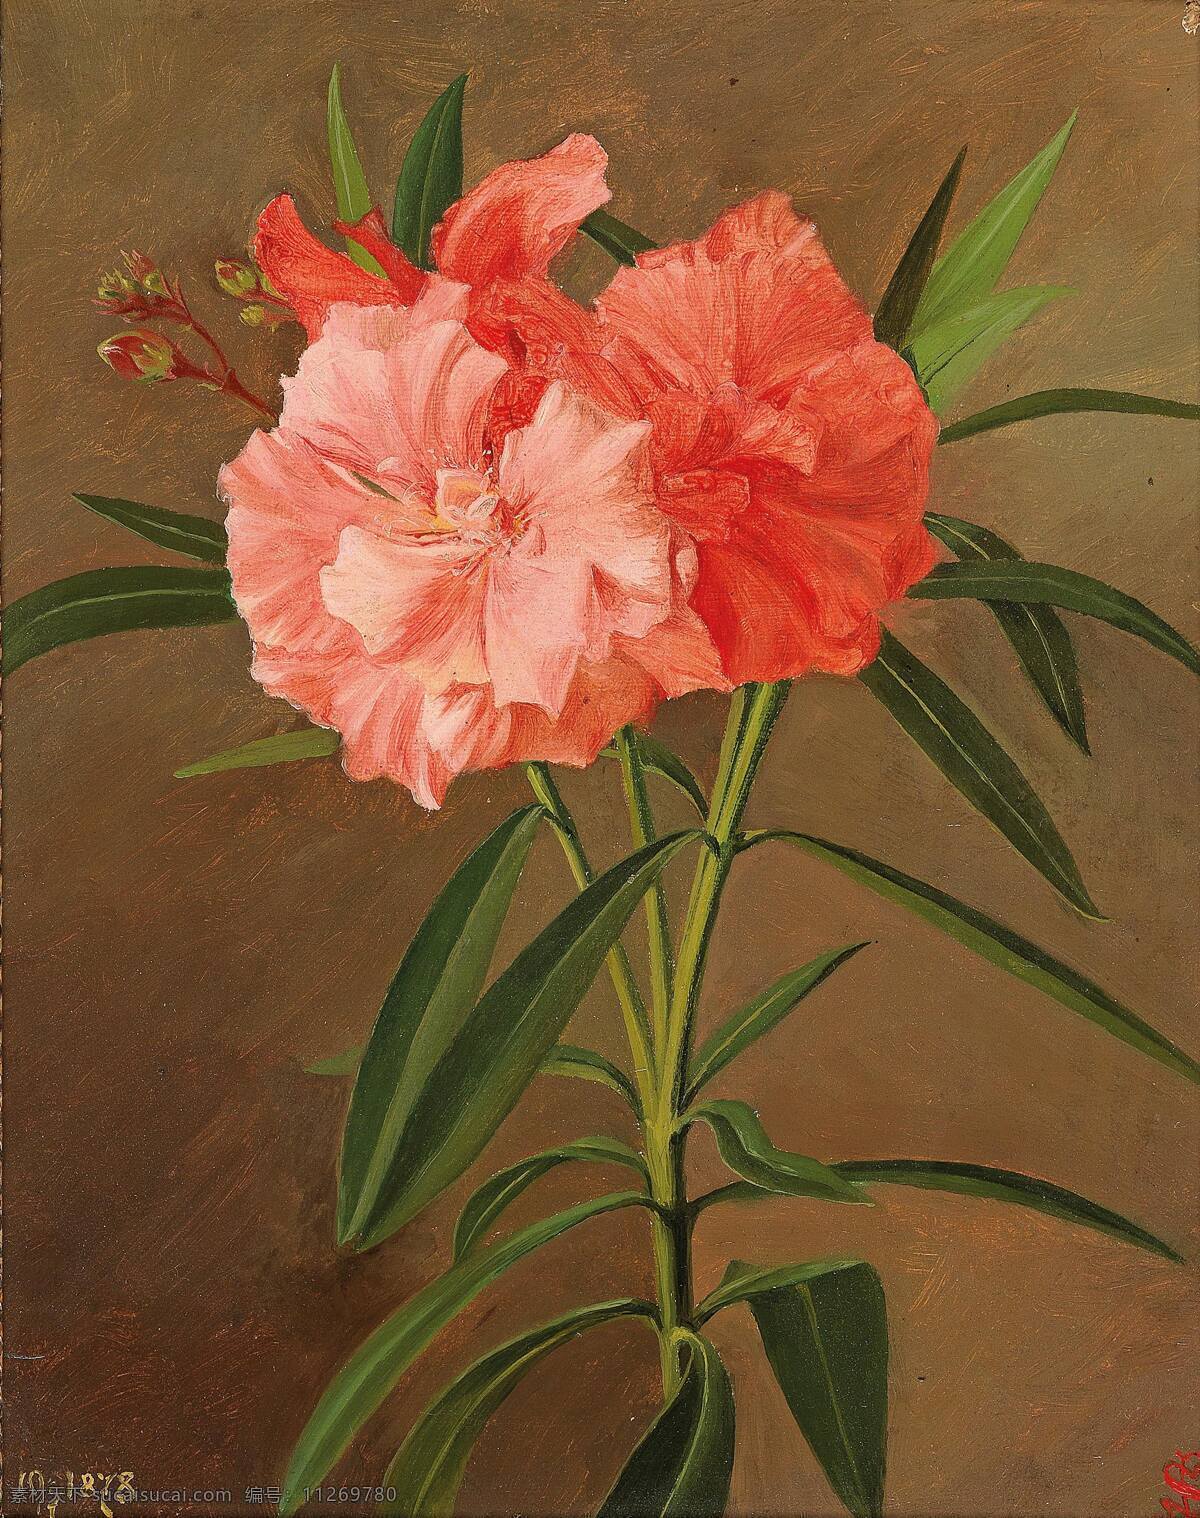 约瑟夫 舒斯特 作品 德国画家 无穷花 粉红色 盛开 静物鲜花 19世纪油画 油画 文化艺术 绘画书法